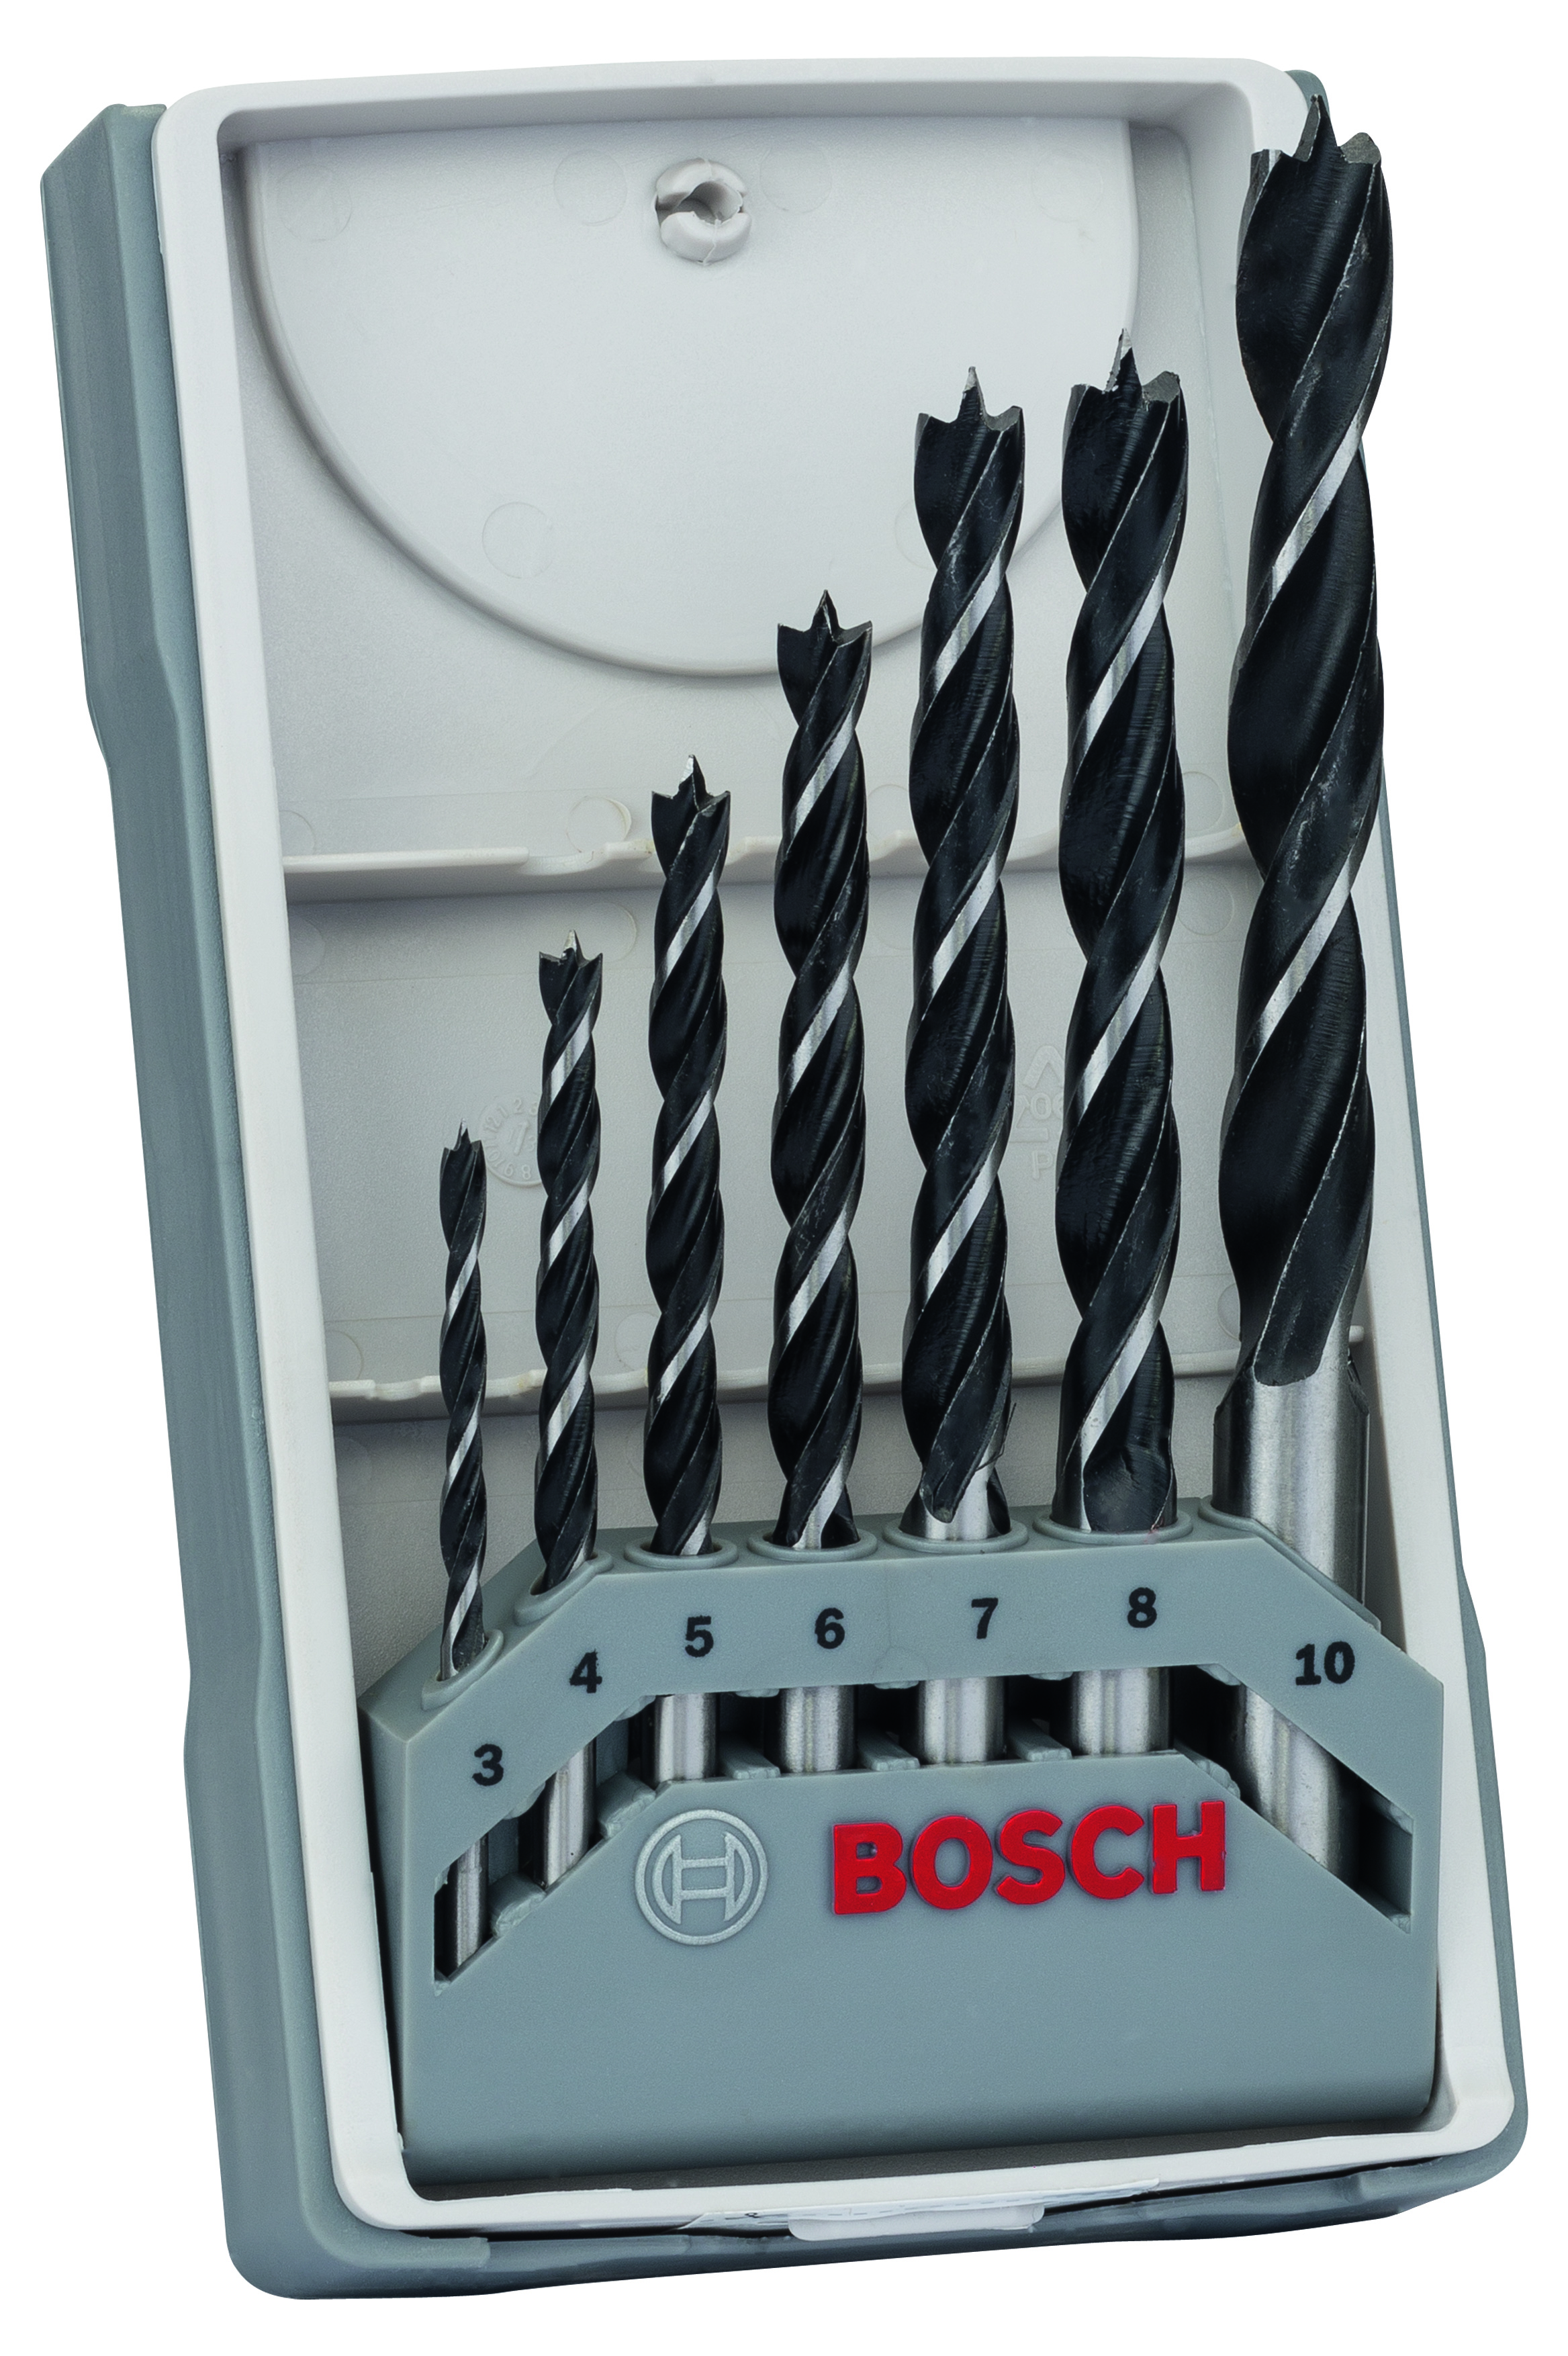 Bosch 7-piece Wood Drill Bit Set